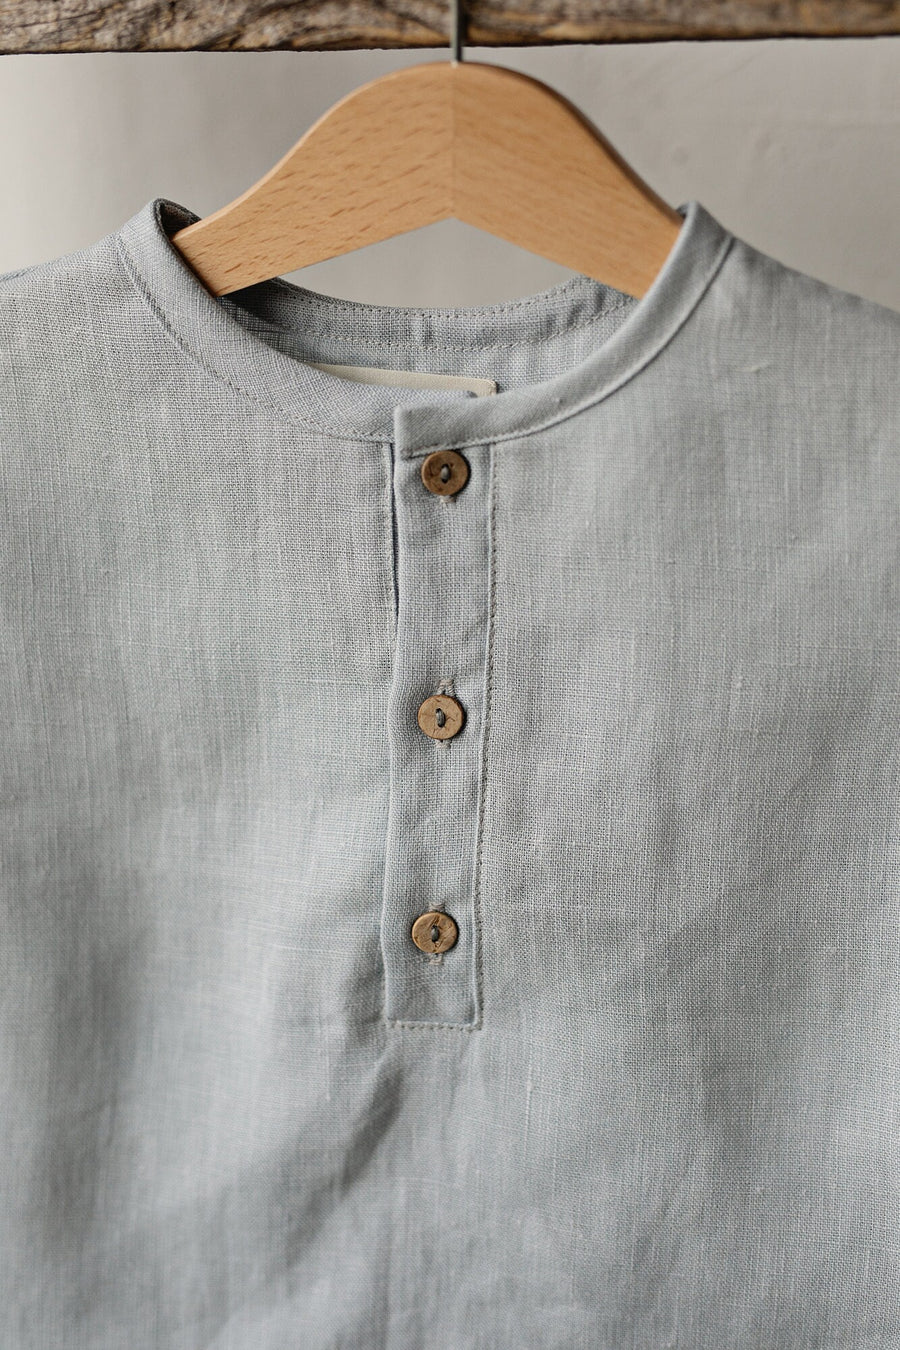 Sky Blue Short Sleeve Button Shirt